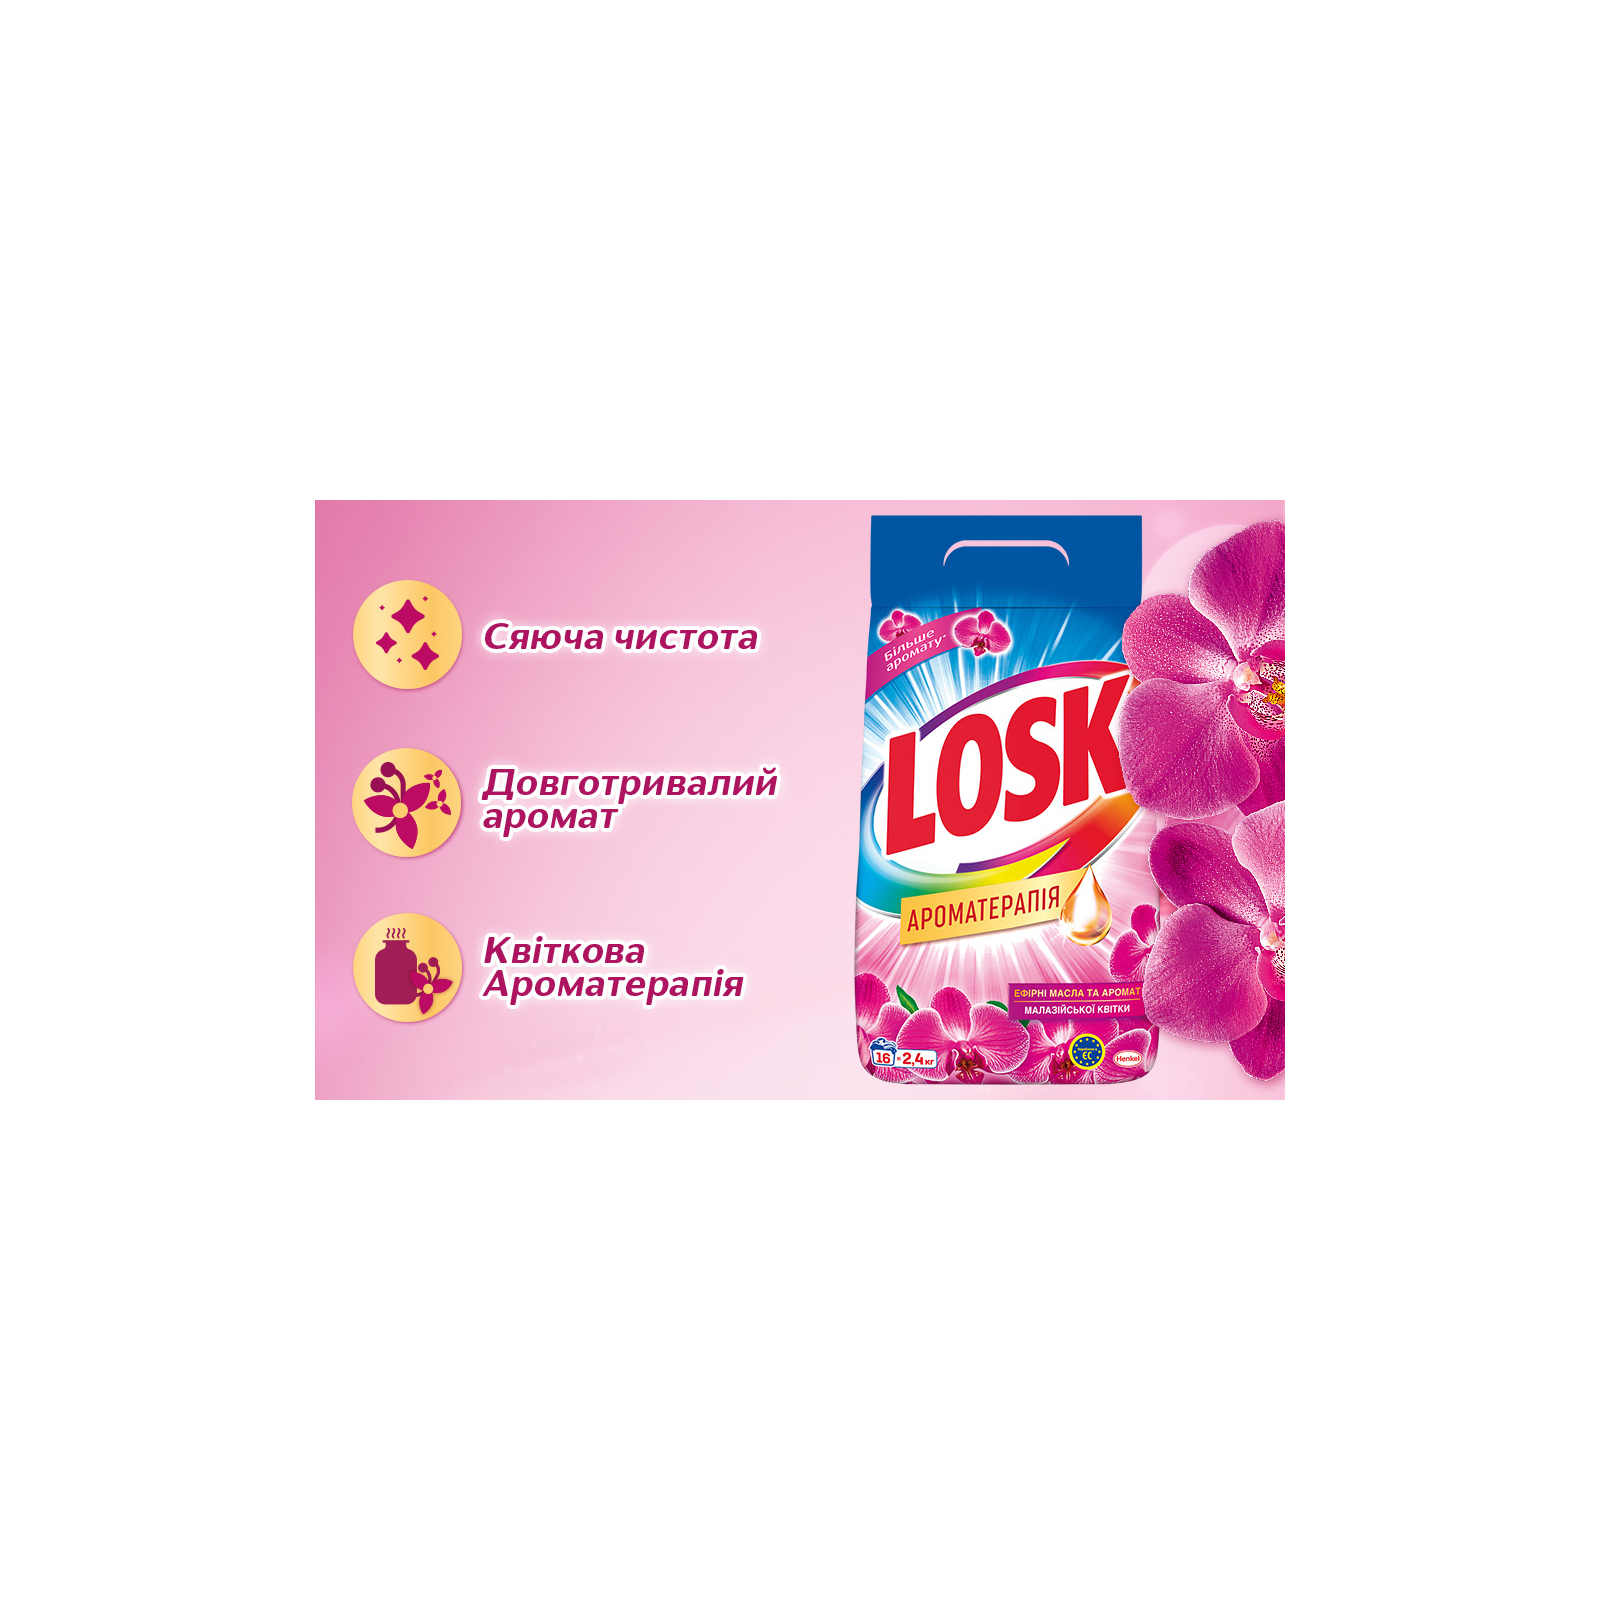 Стиральный порошок Losk Ароматерапия Эфирные масла и аромат Малазийского цветка 7.65 кг (9000101547160) изображение 2